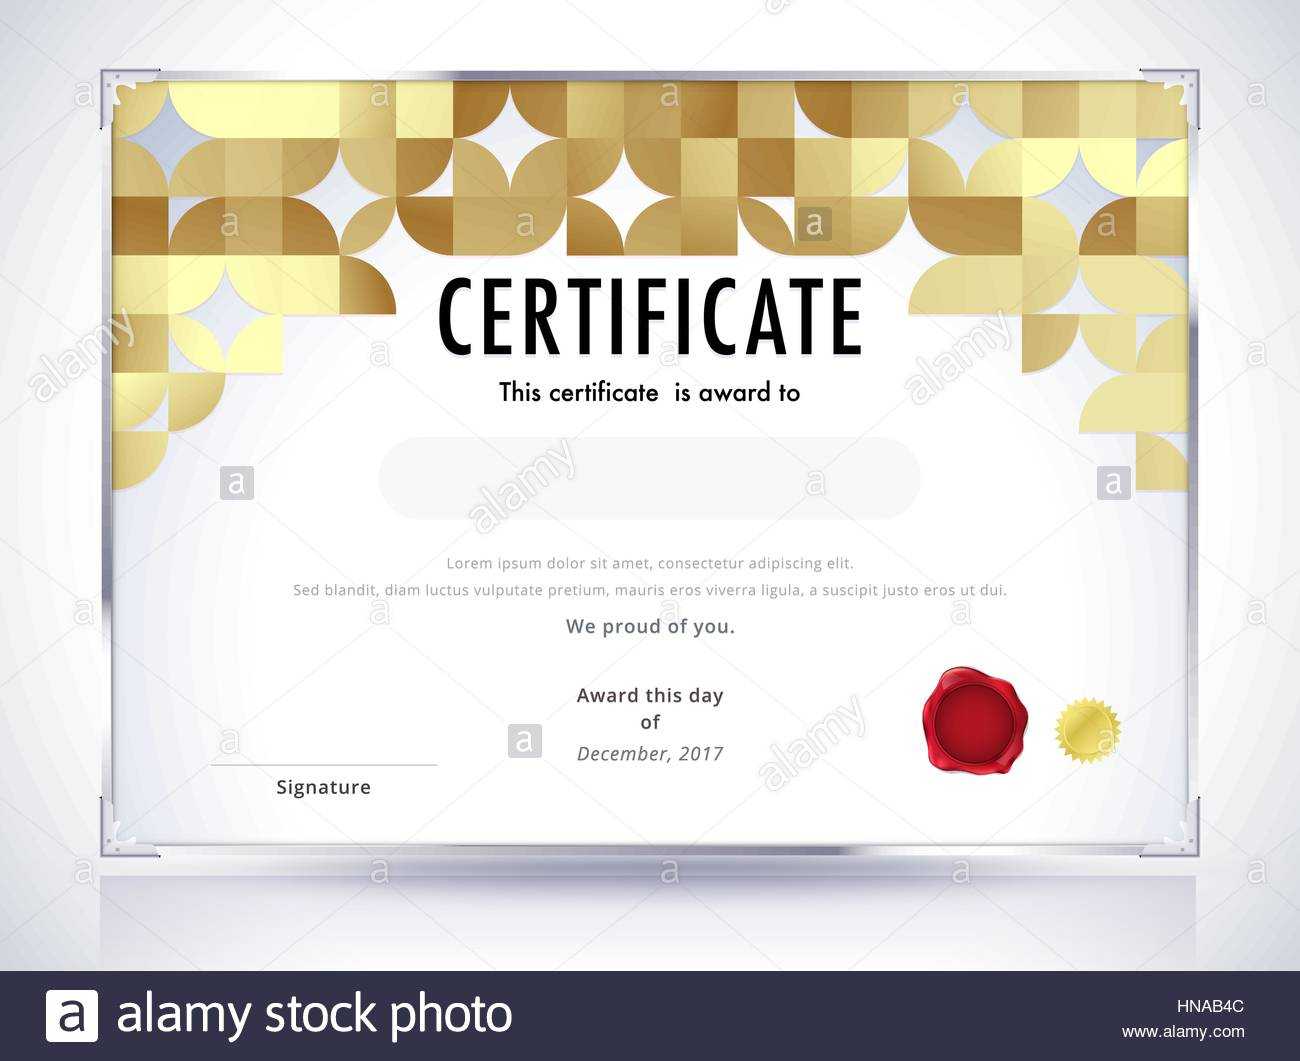 Golden Certificate Template Design. Luxury Certificate With Design A Certificate Template